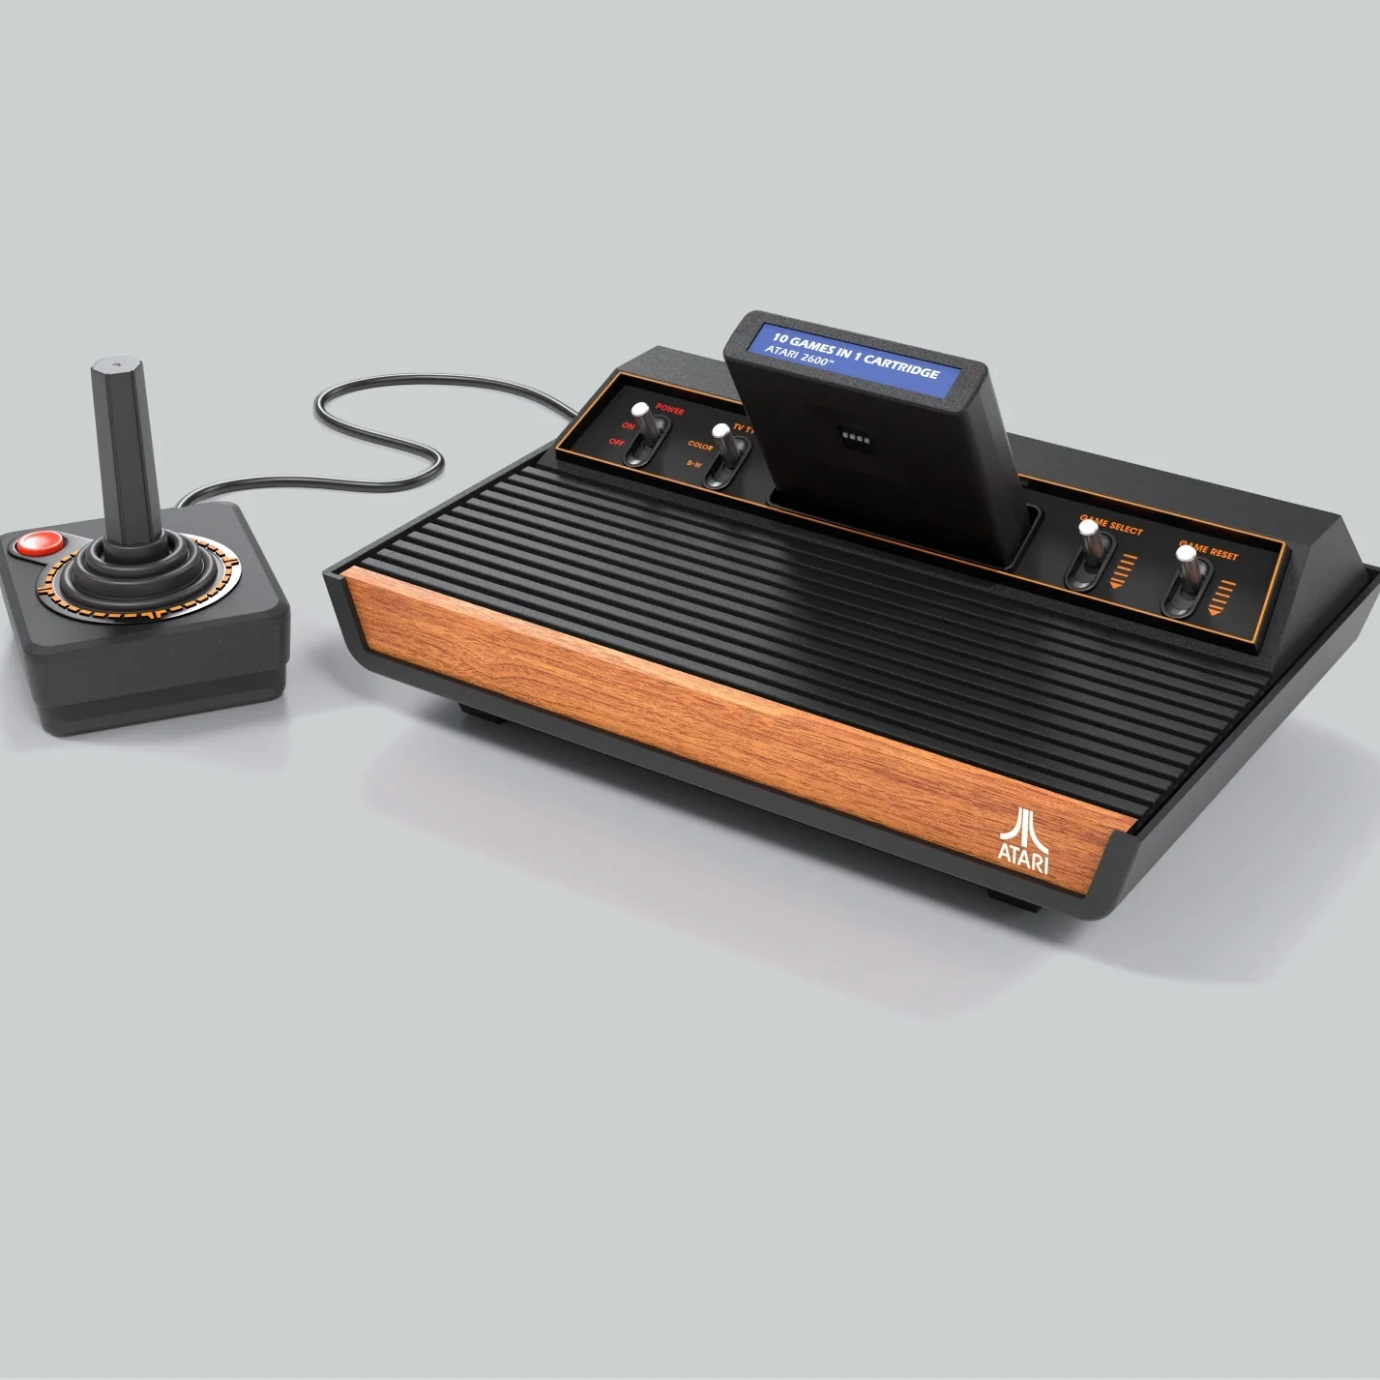 Atari-2600-plus-square